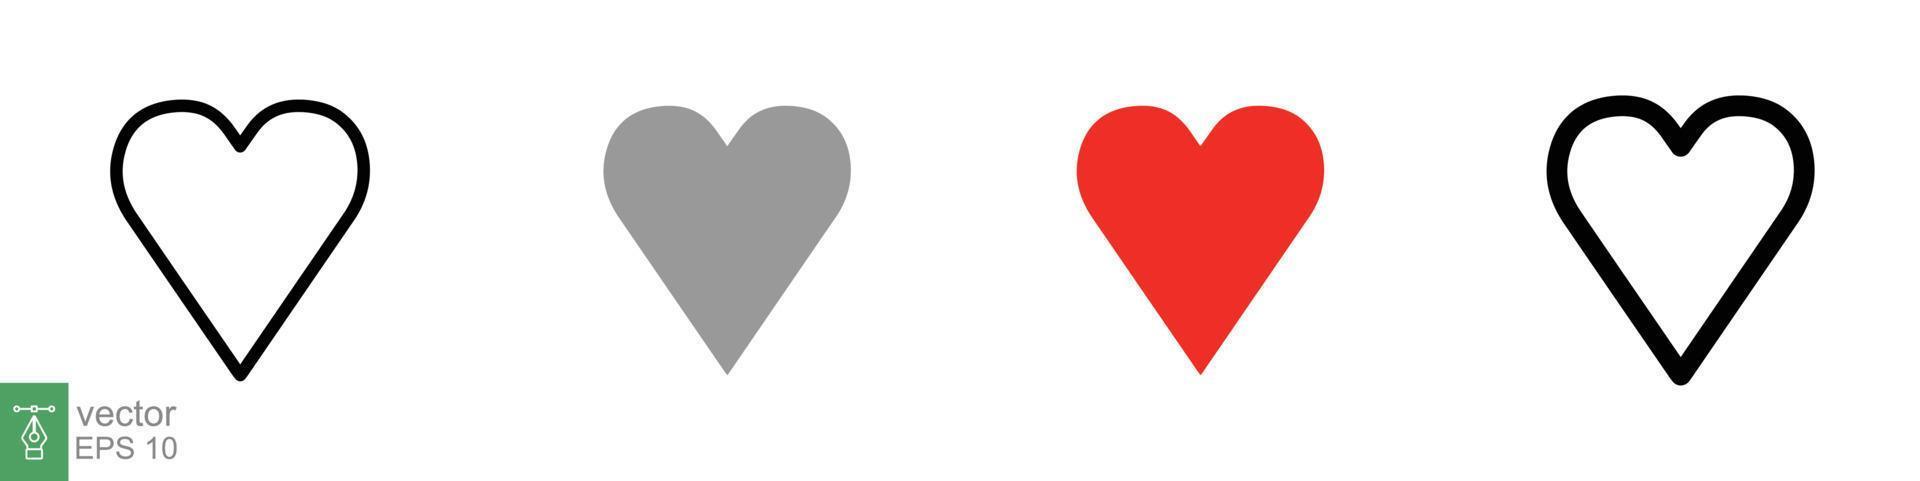 jeu d'icônes de coeur. symbole d'amour dans un style plat, solide et contour. collection de forme de coeur d'amour noir, rouge, concept romantique. conception d'illustration vectorielle isolée sur fond blanc. ep 10. vecteur